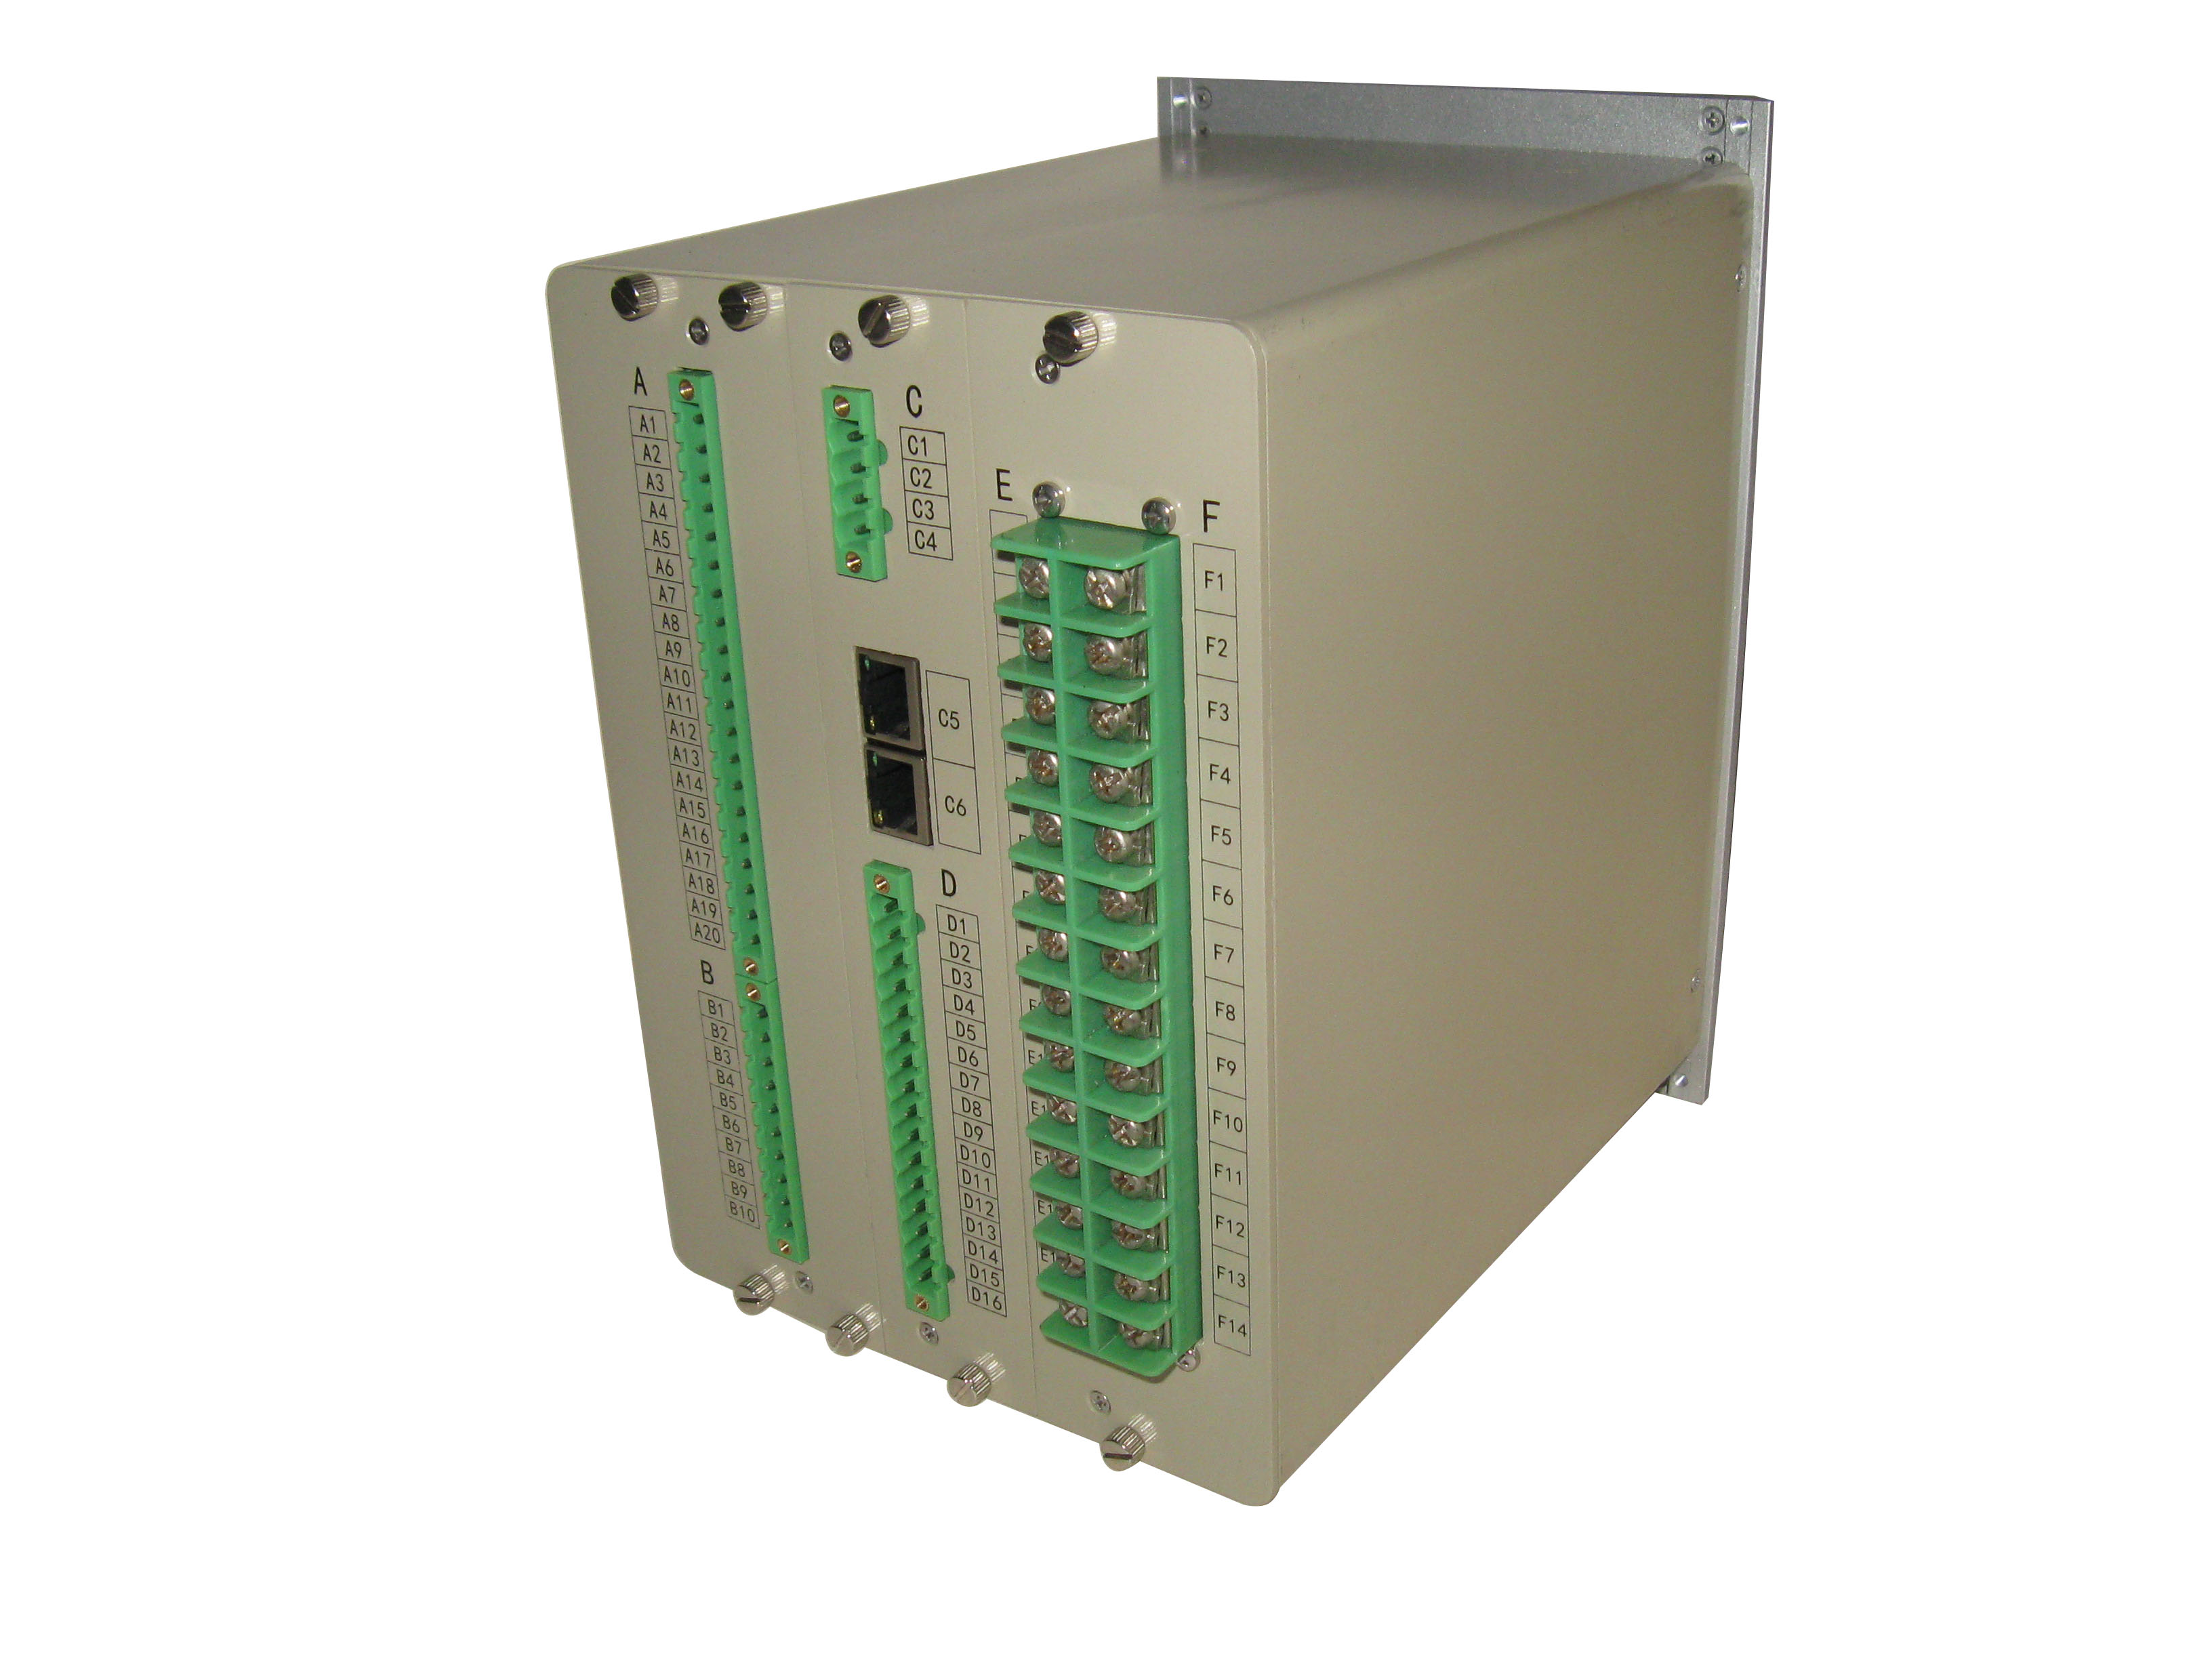 CSW-830B 微机发电机后备保护测控装置  兼容SEEC-830B湖南株洲可胜电子厂家直销